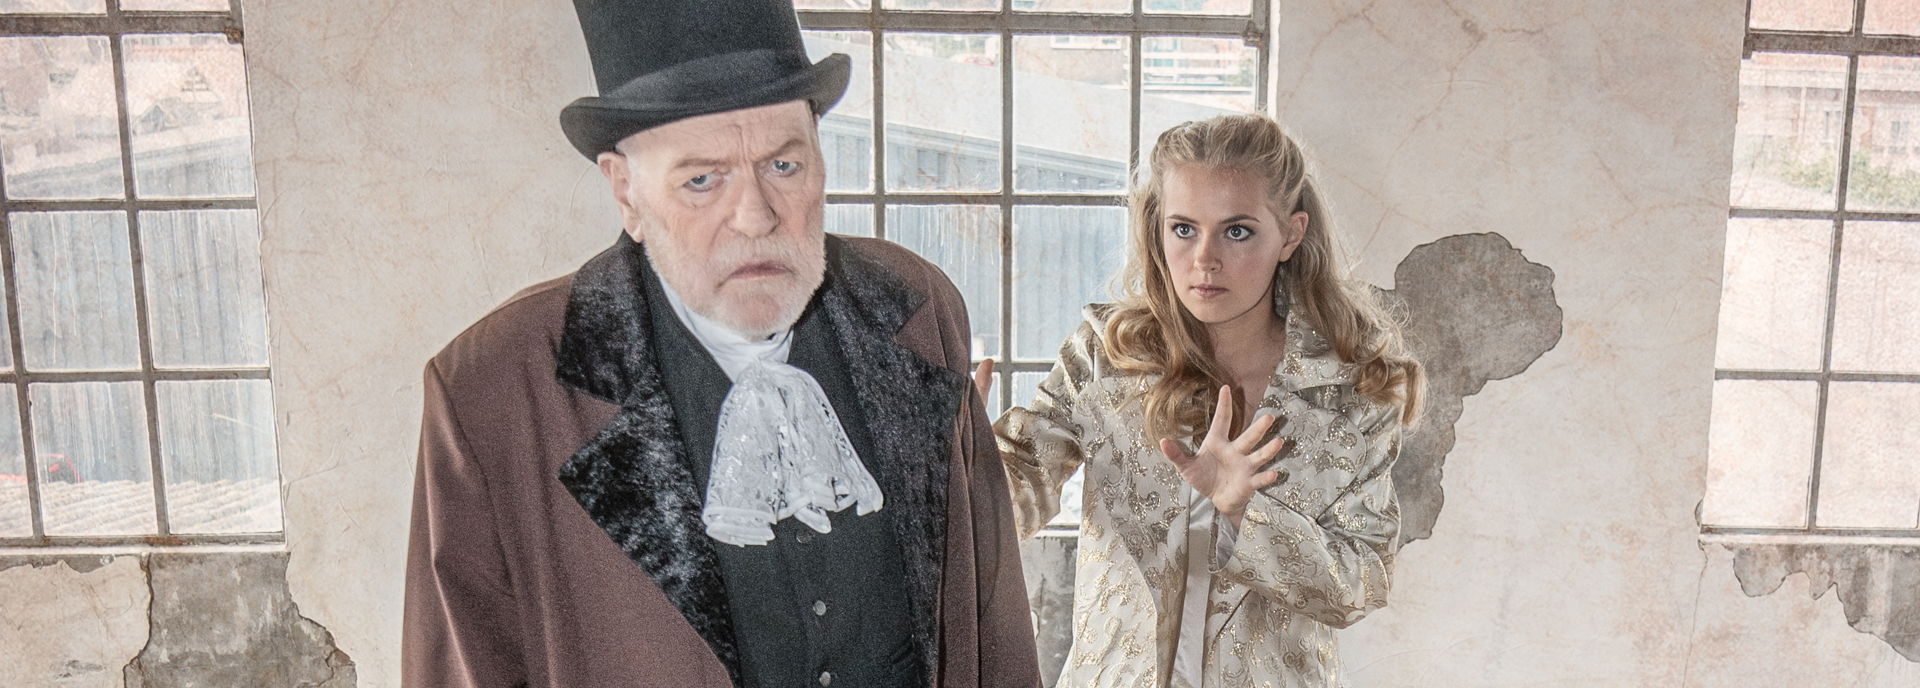 Hartje Winter Festival organiseerde in 2019 de eerste theaterproductie: Scrooge